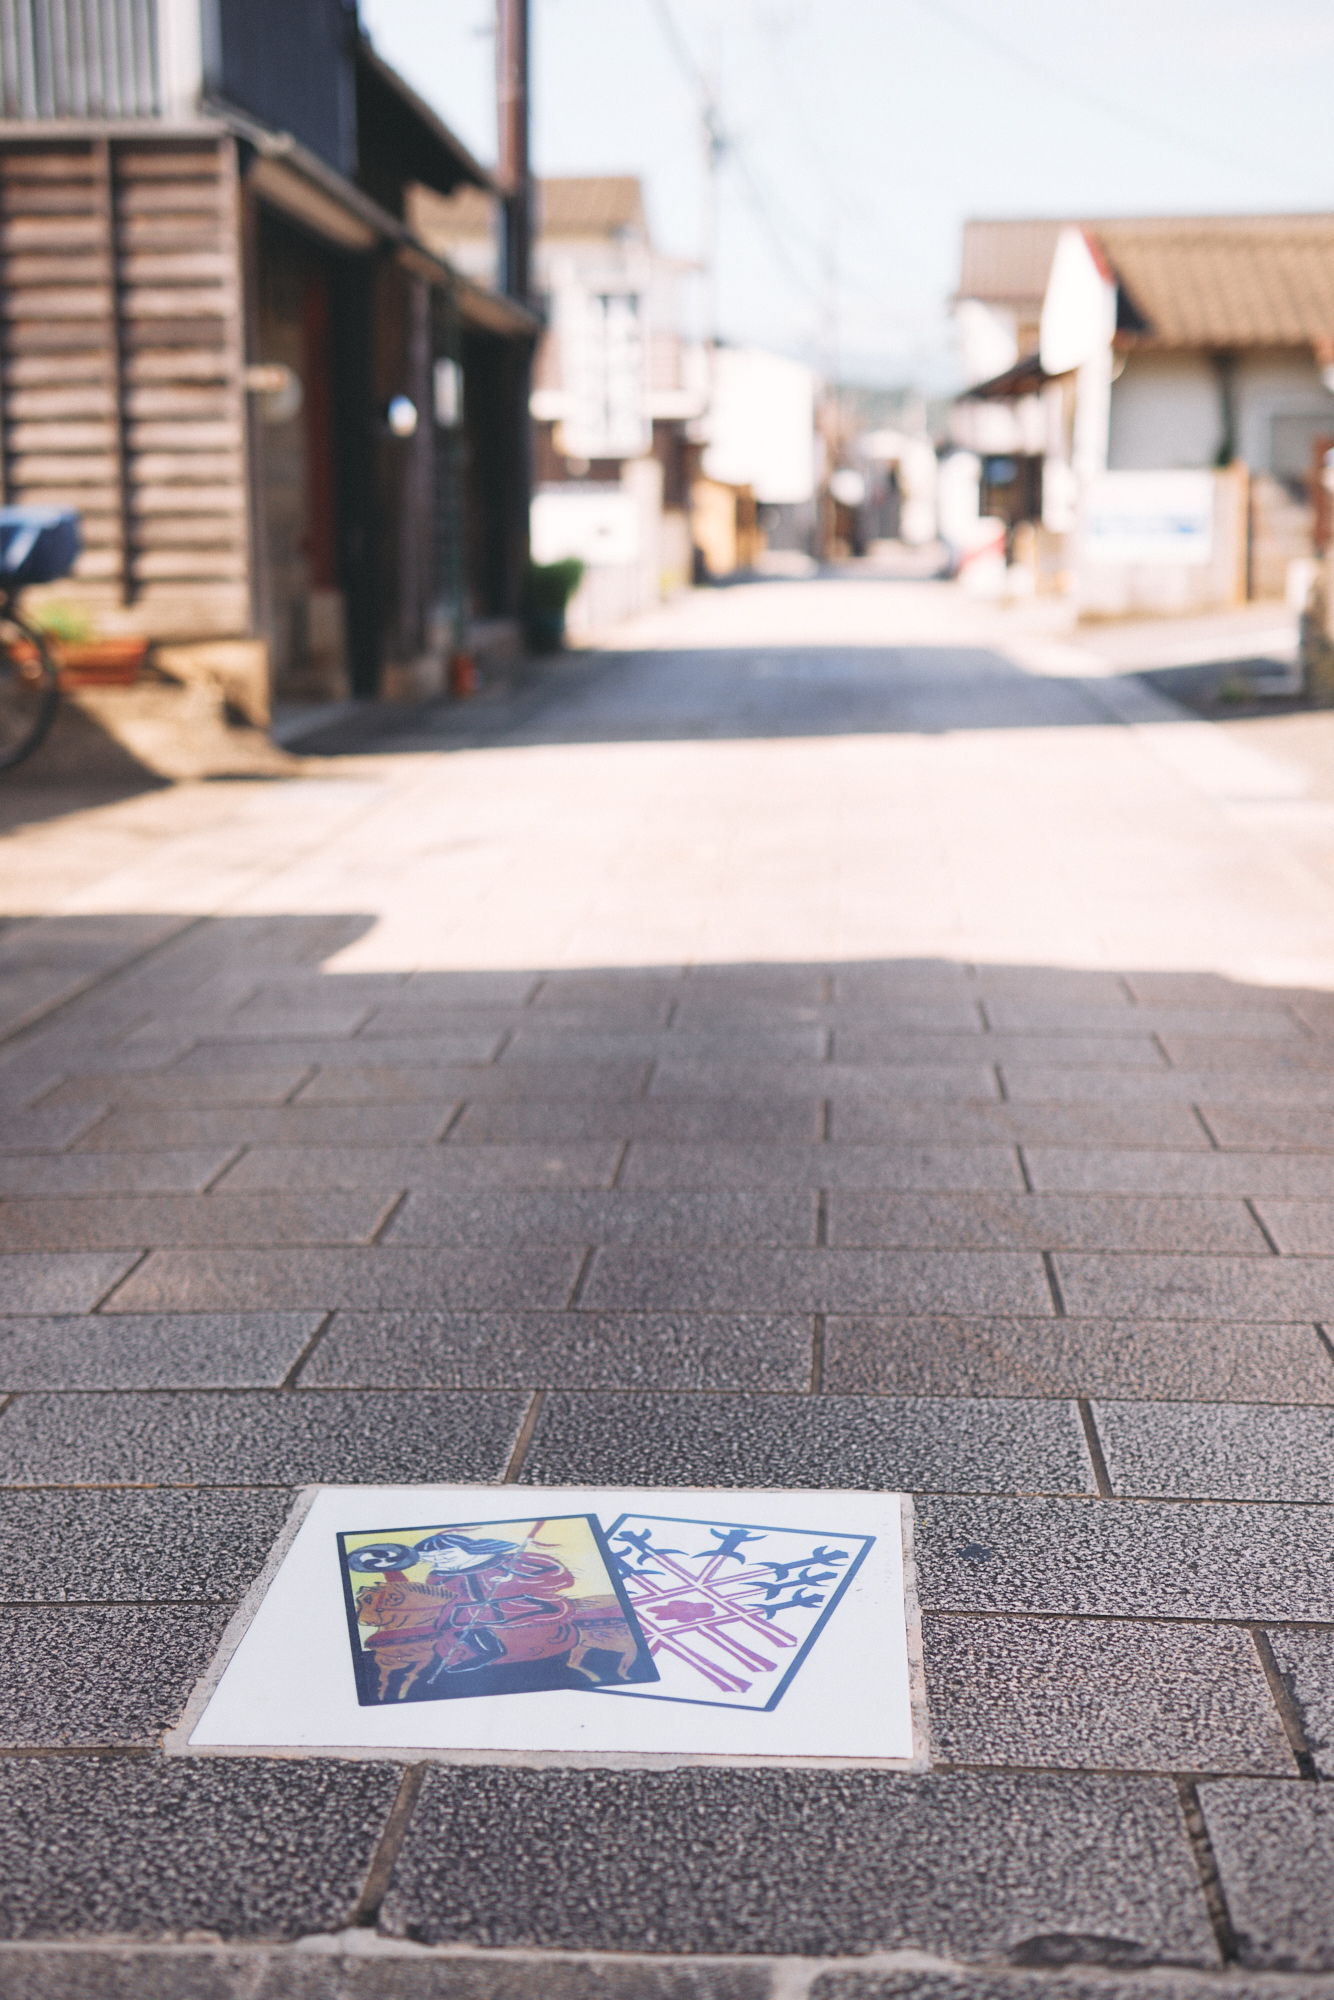 石田畳に施されたうんすんかるた画像 Unsung karuta on stone pavement